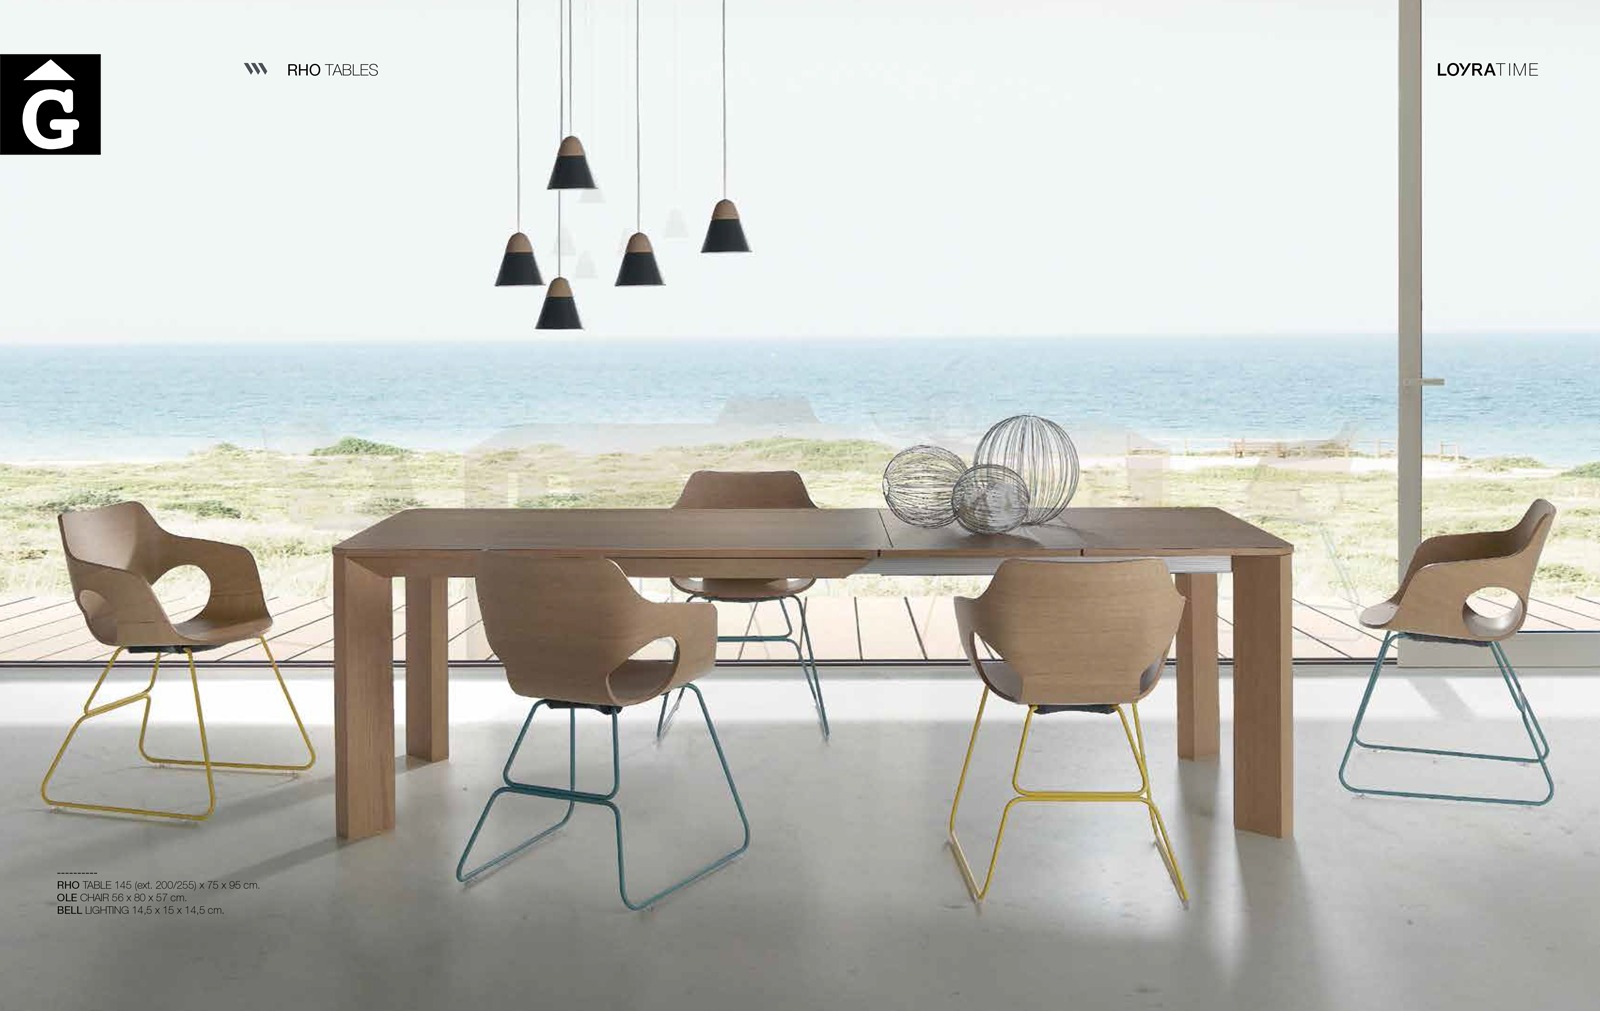 56 0 TAULA RHO Loyra muebles by mobles Gifreu Idees per la llar moble de qualitat